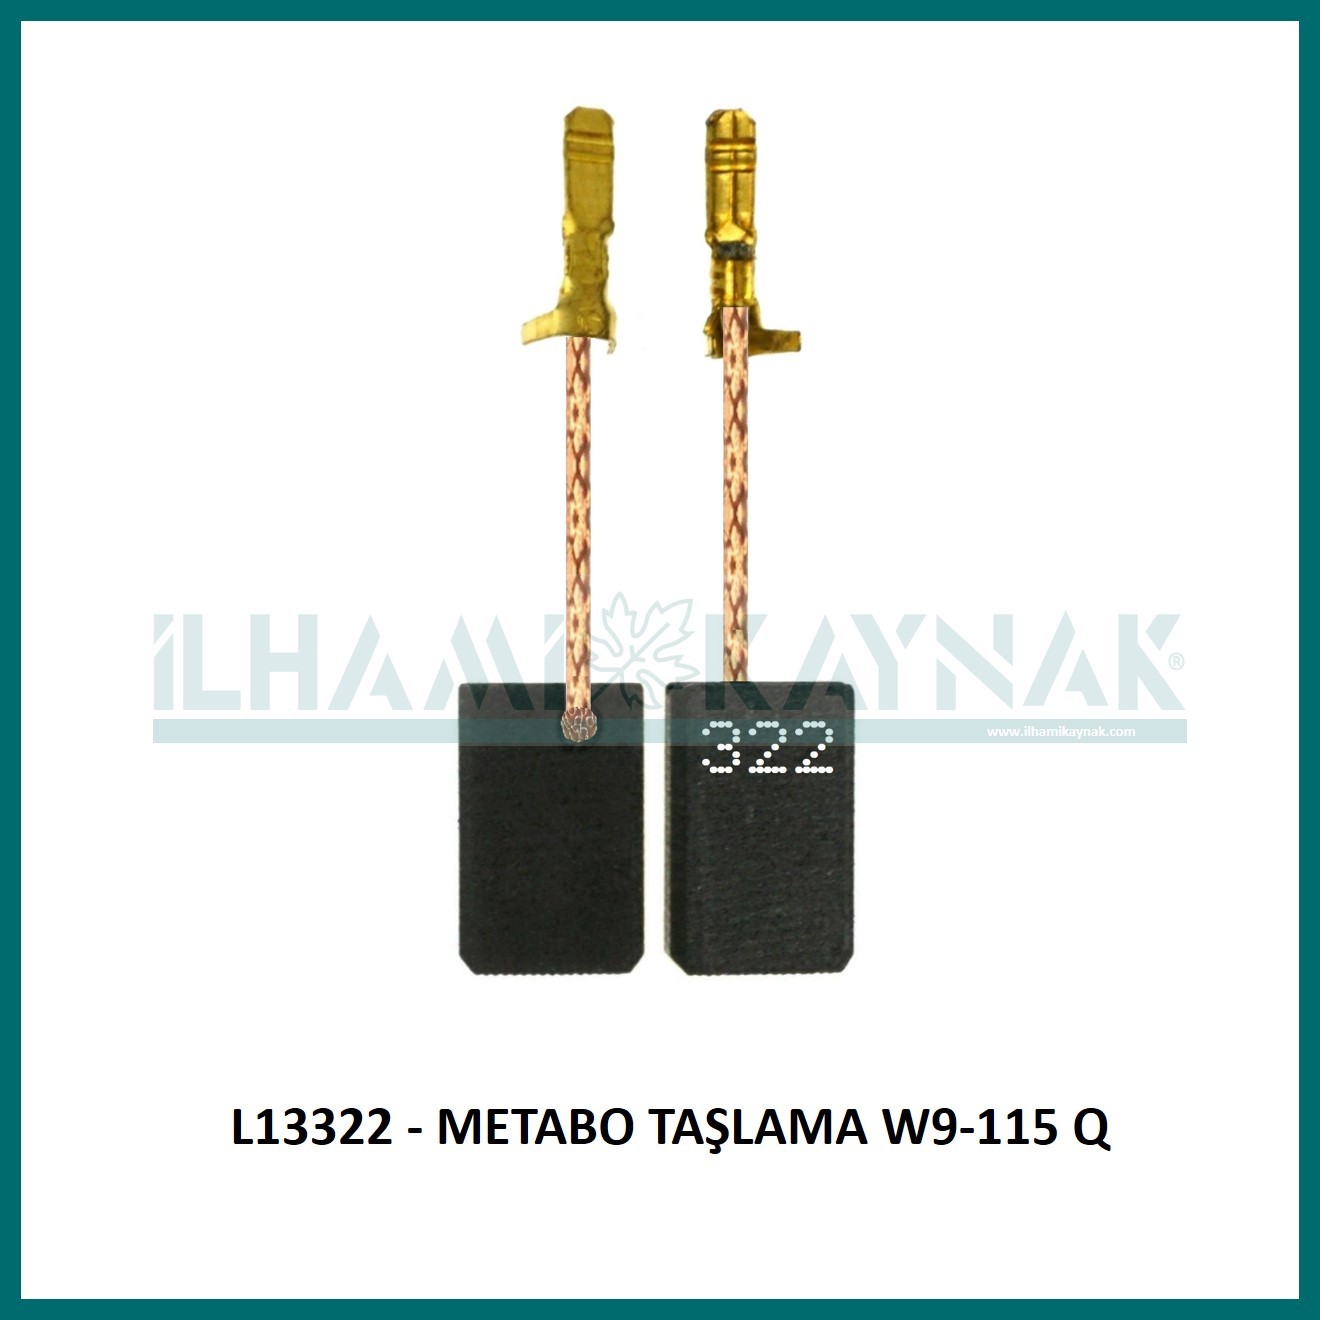 L13322 - METABO TAŞLAMA W9-115 Q - 5*10*17 mm - Minimum Satın Alım: 10 Adet